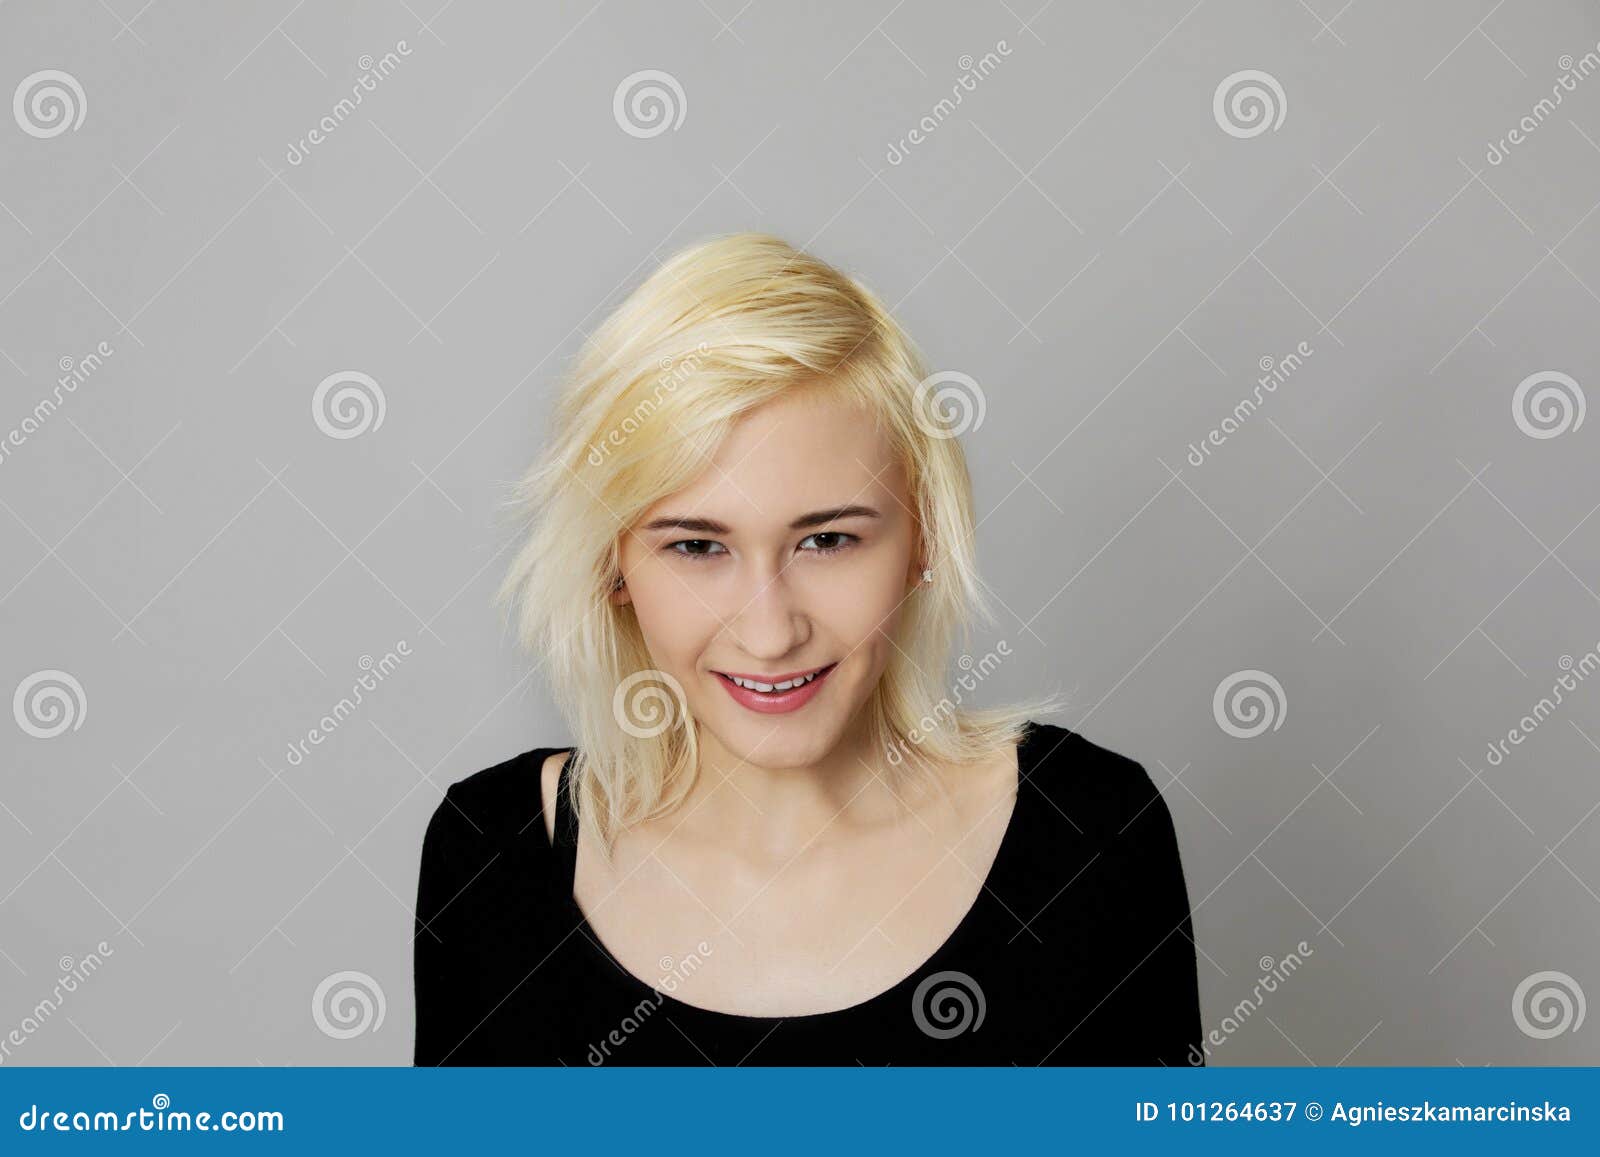 Angry teenage girl stock image. Image of girl, female - 101264637